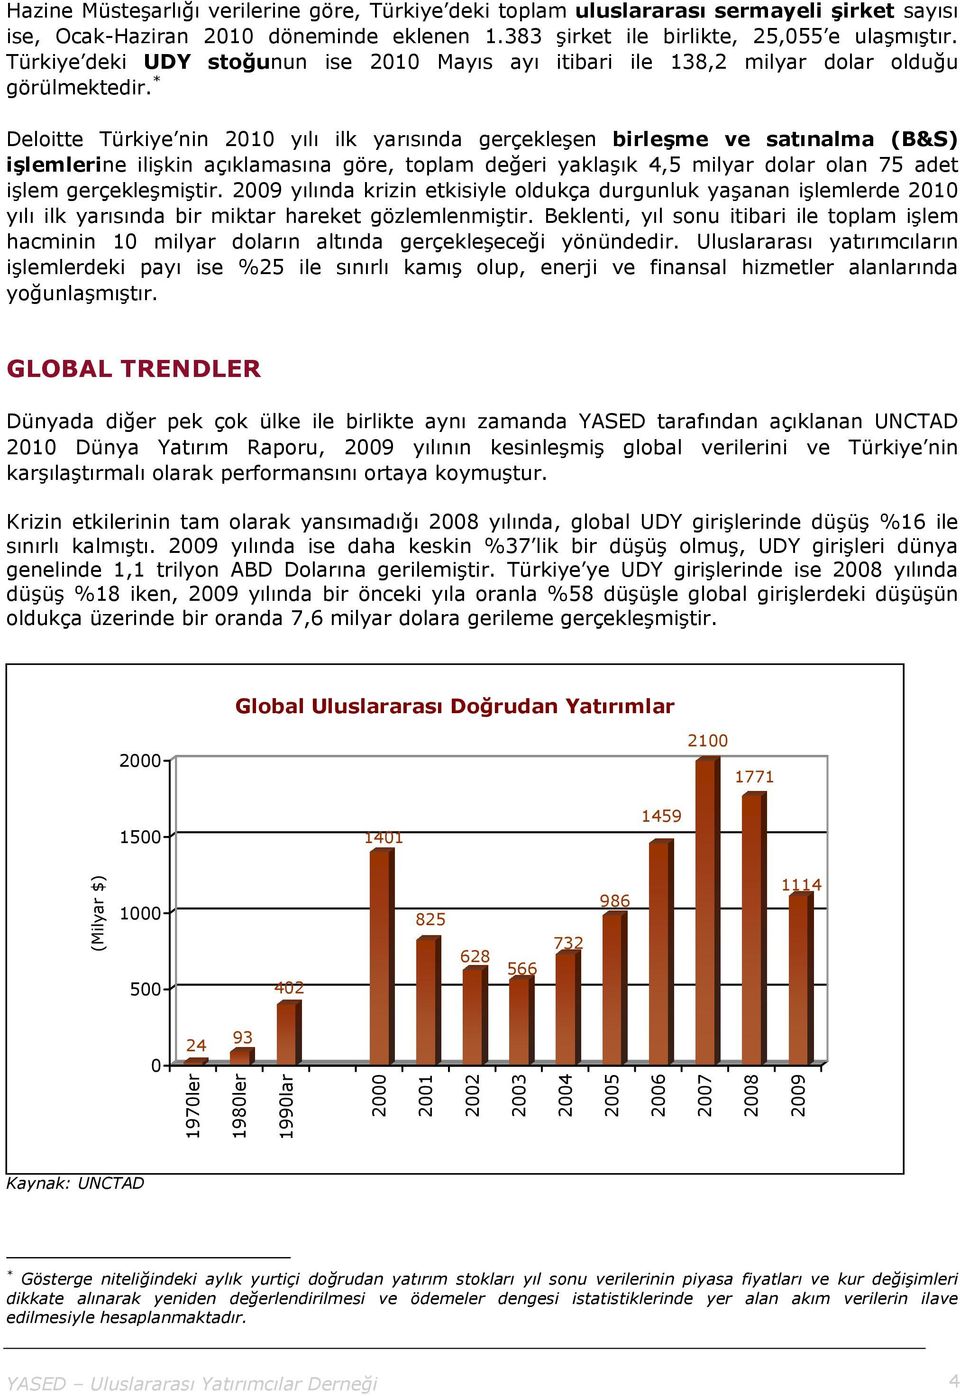 * Deloitte Türkiye nin 2010 yılı ilk yarısında gerçekleşen birleşme ve satınalma (B&S) işlemlerine ilişkin açıklamasına göre, toplam değeri yaklaşık 4,5 milyar dolar olan 75 adet işlem